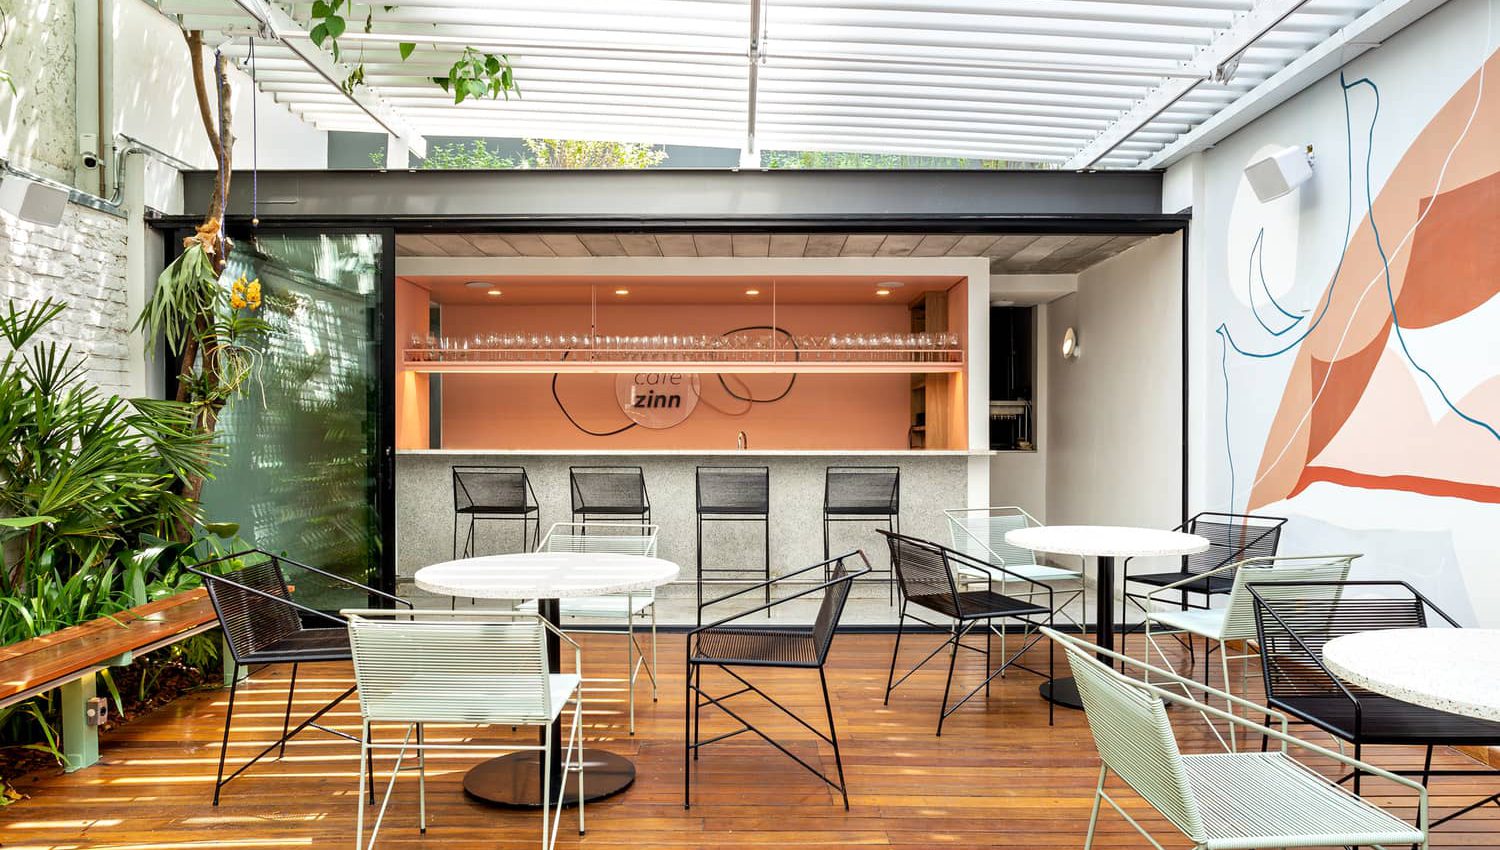 طراحی کافه کوچک با فضای بسته و باز - تحریریه آس دیزاین